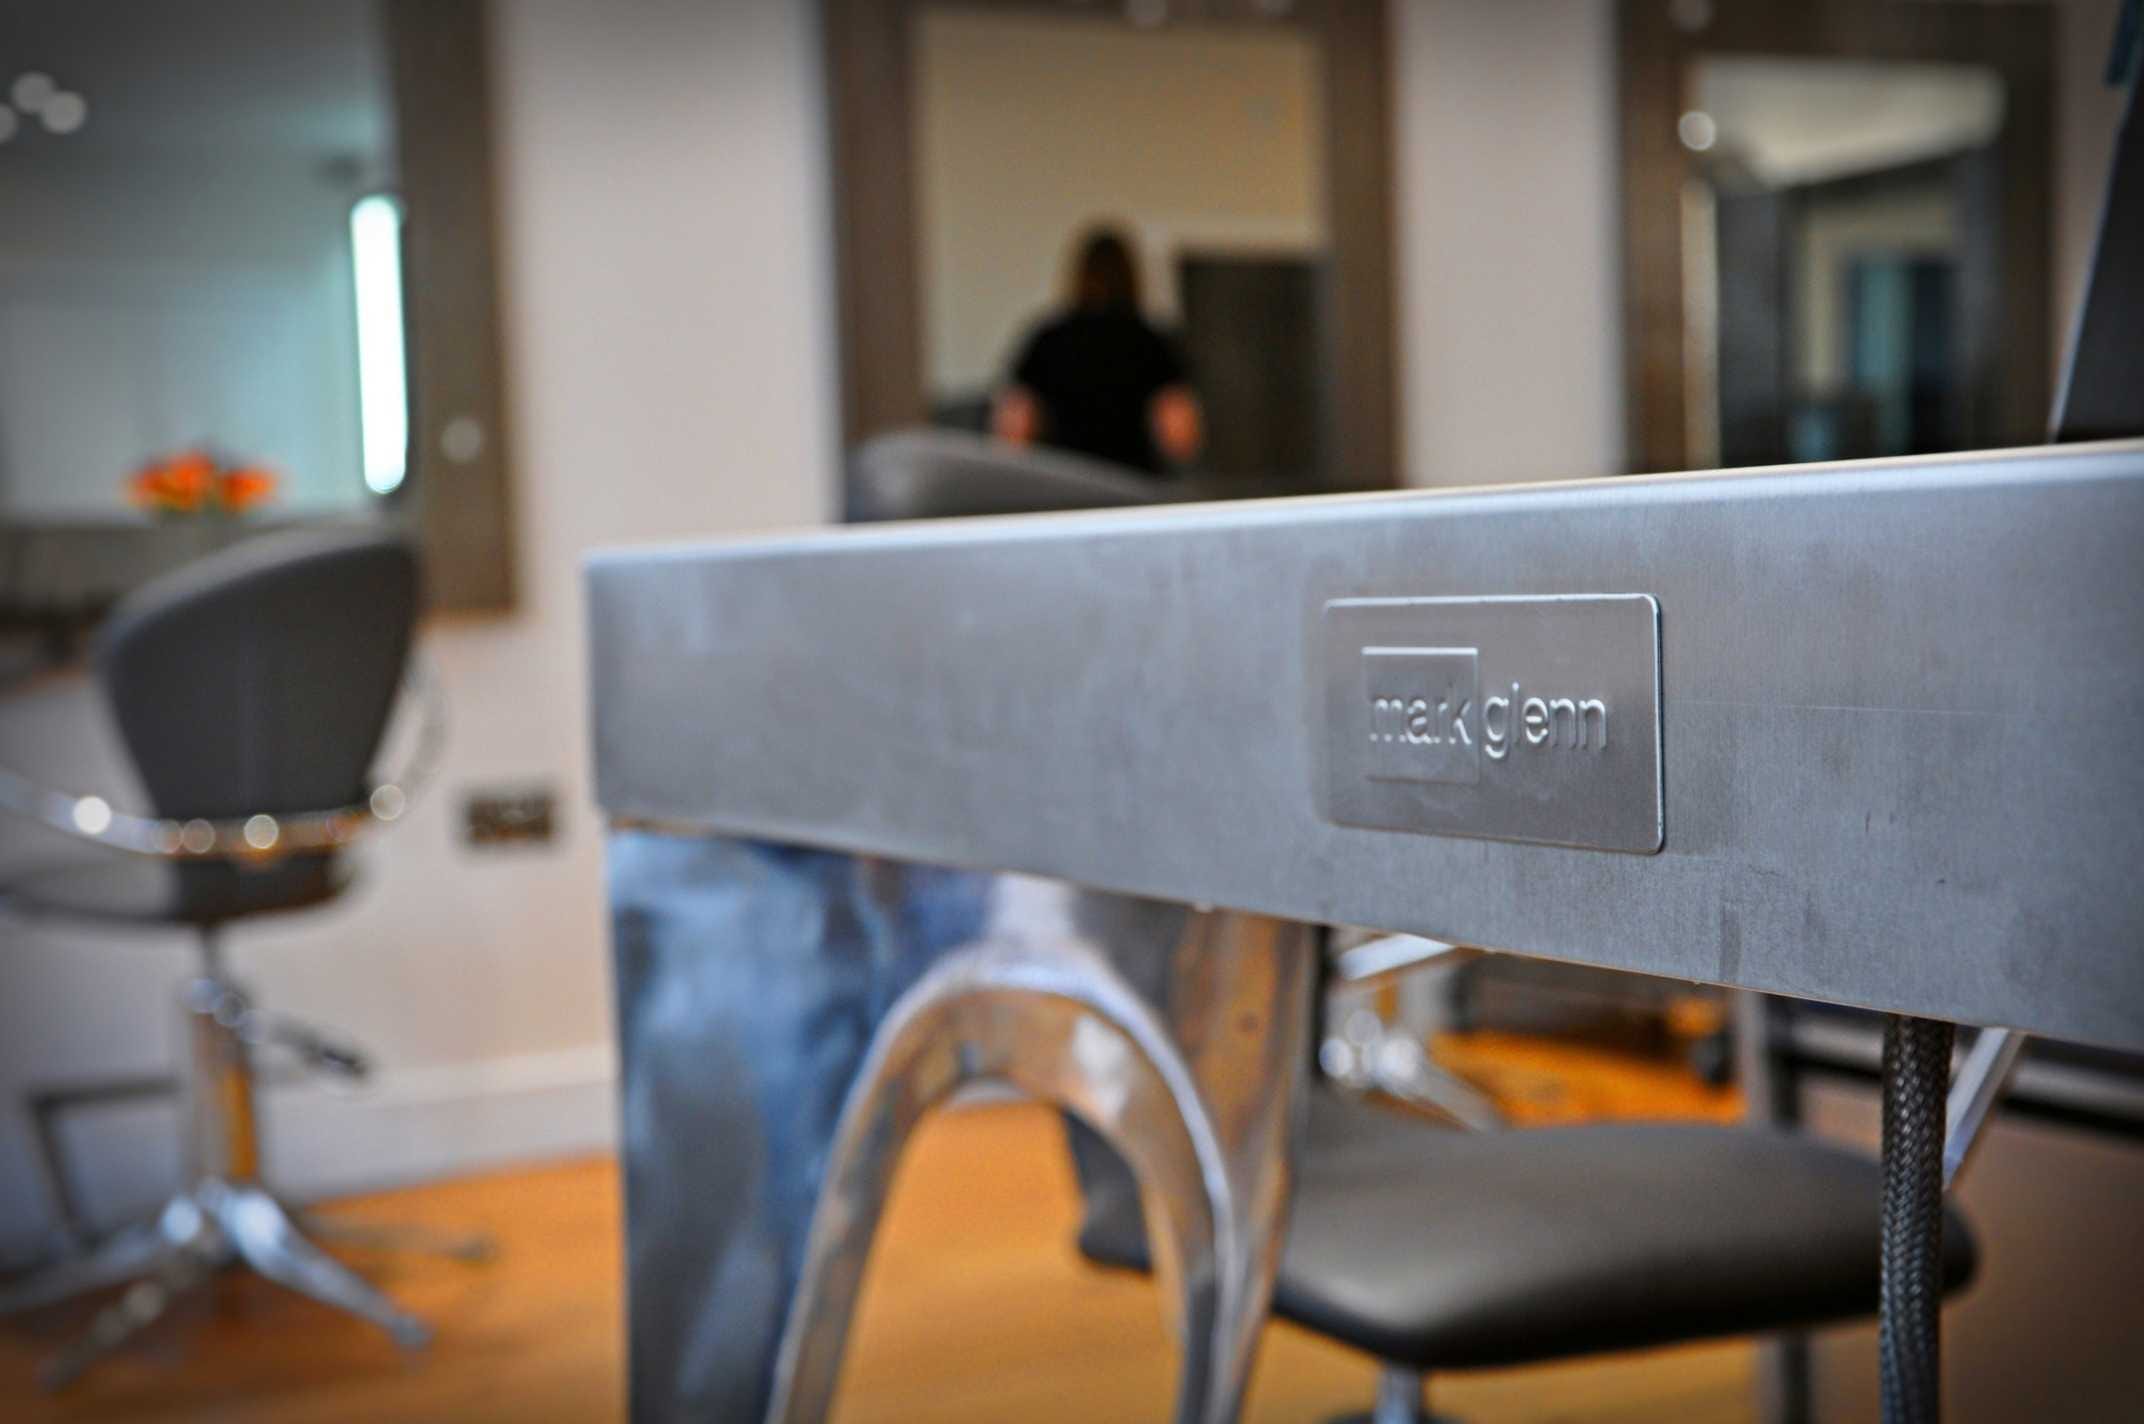 Bespoke Italian designer furniture at Mark Glenn's London Hair Extensions Studio